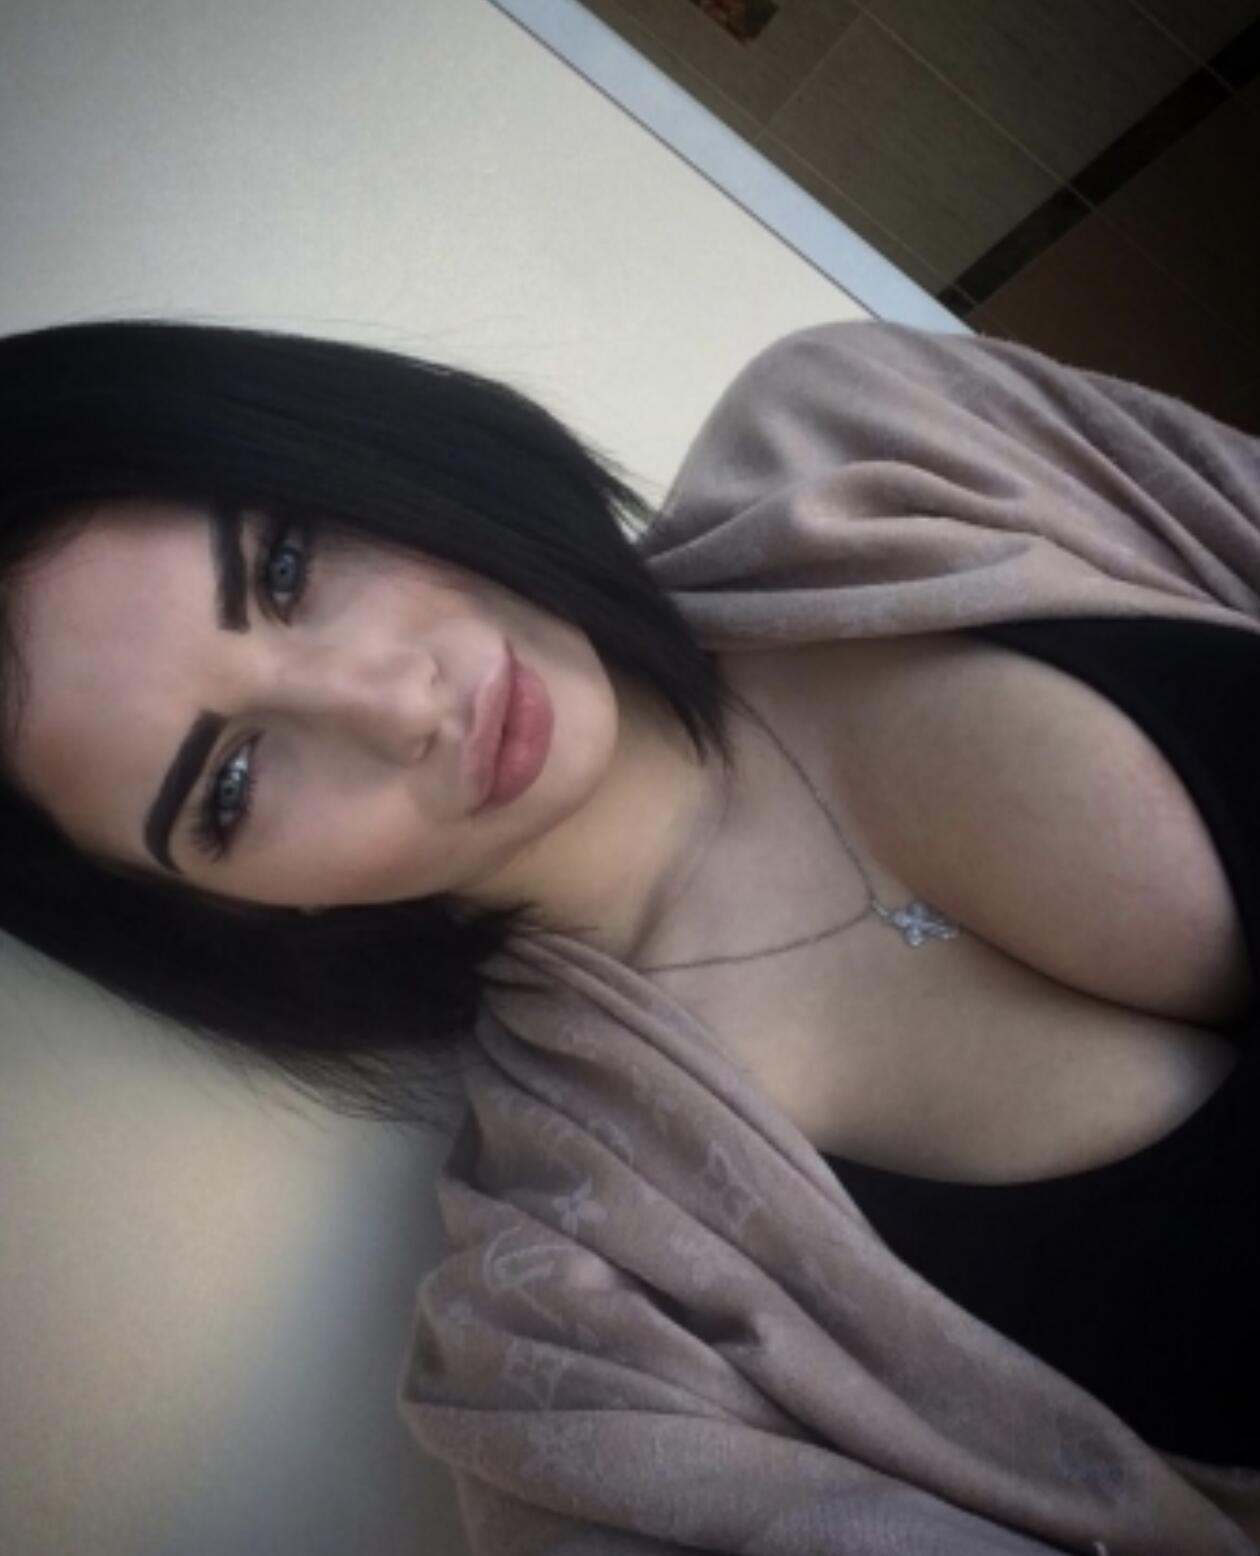 Проститутка Даша, фото 3, тел: 0996645185. В центре города - Киев